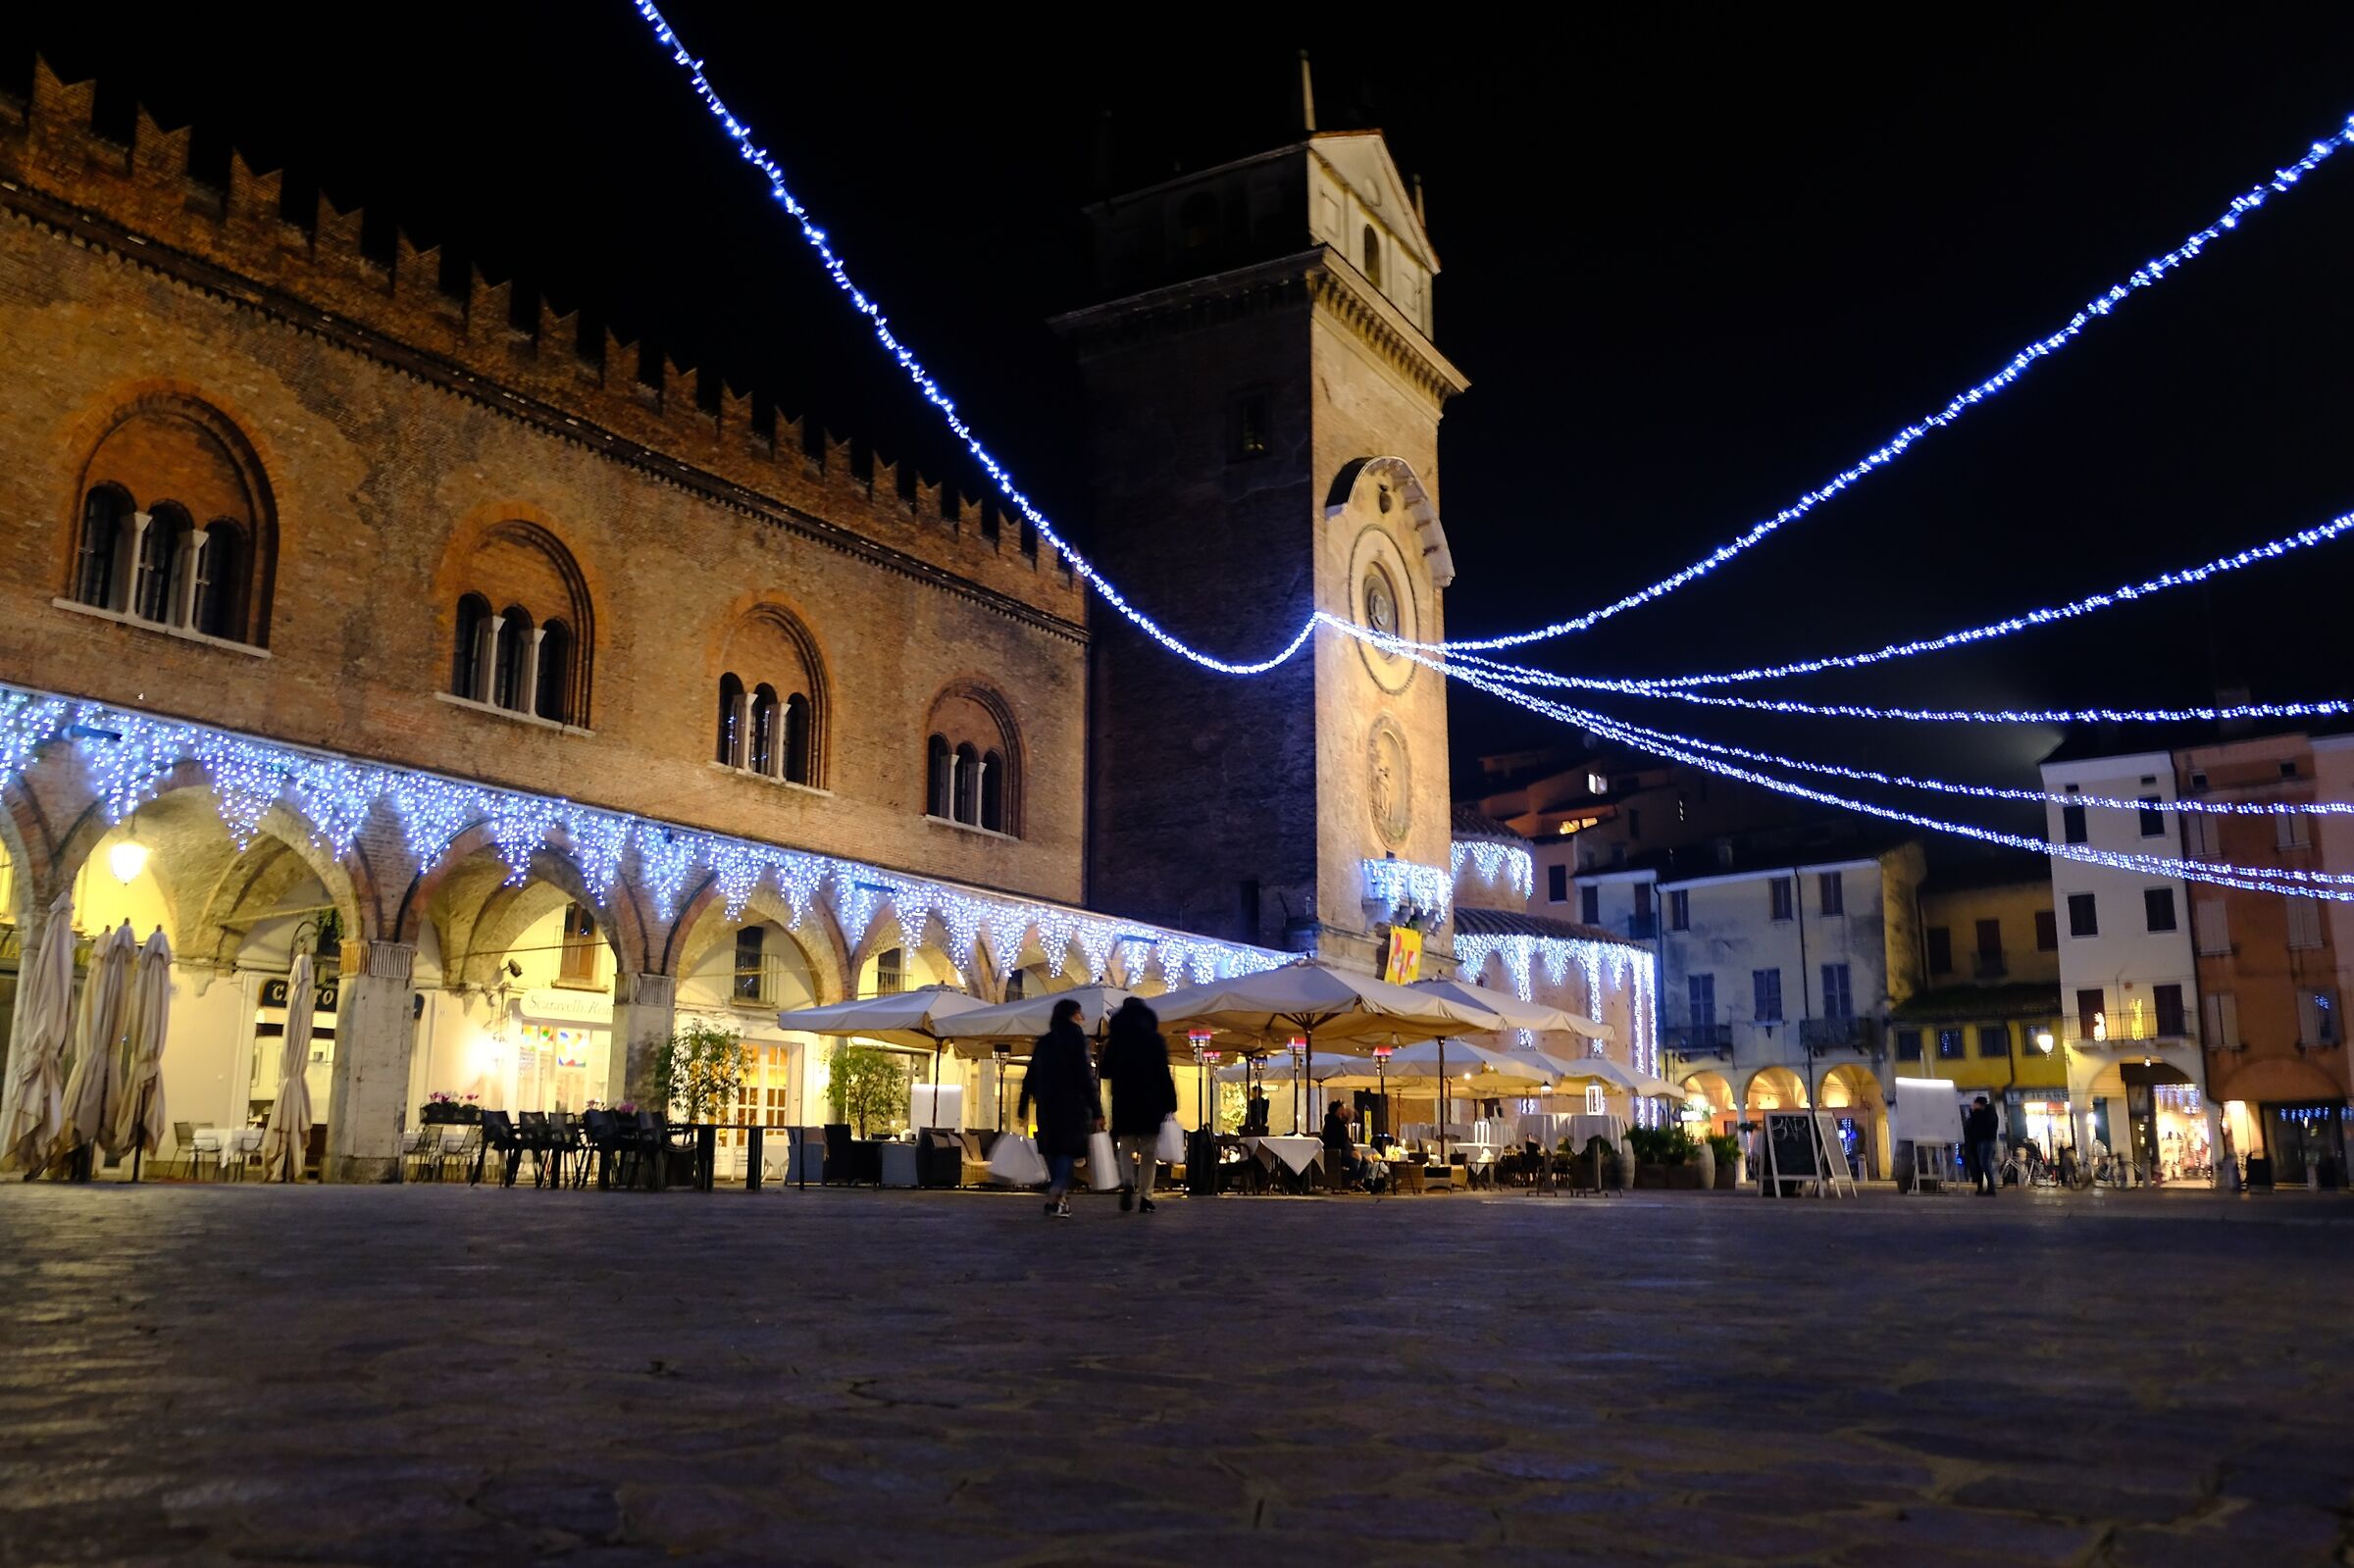 Pre Christmas shopping in Piazza delle Erbe in Mantua ...